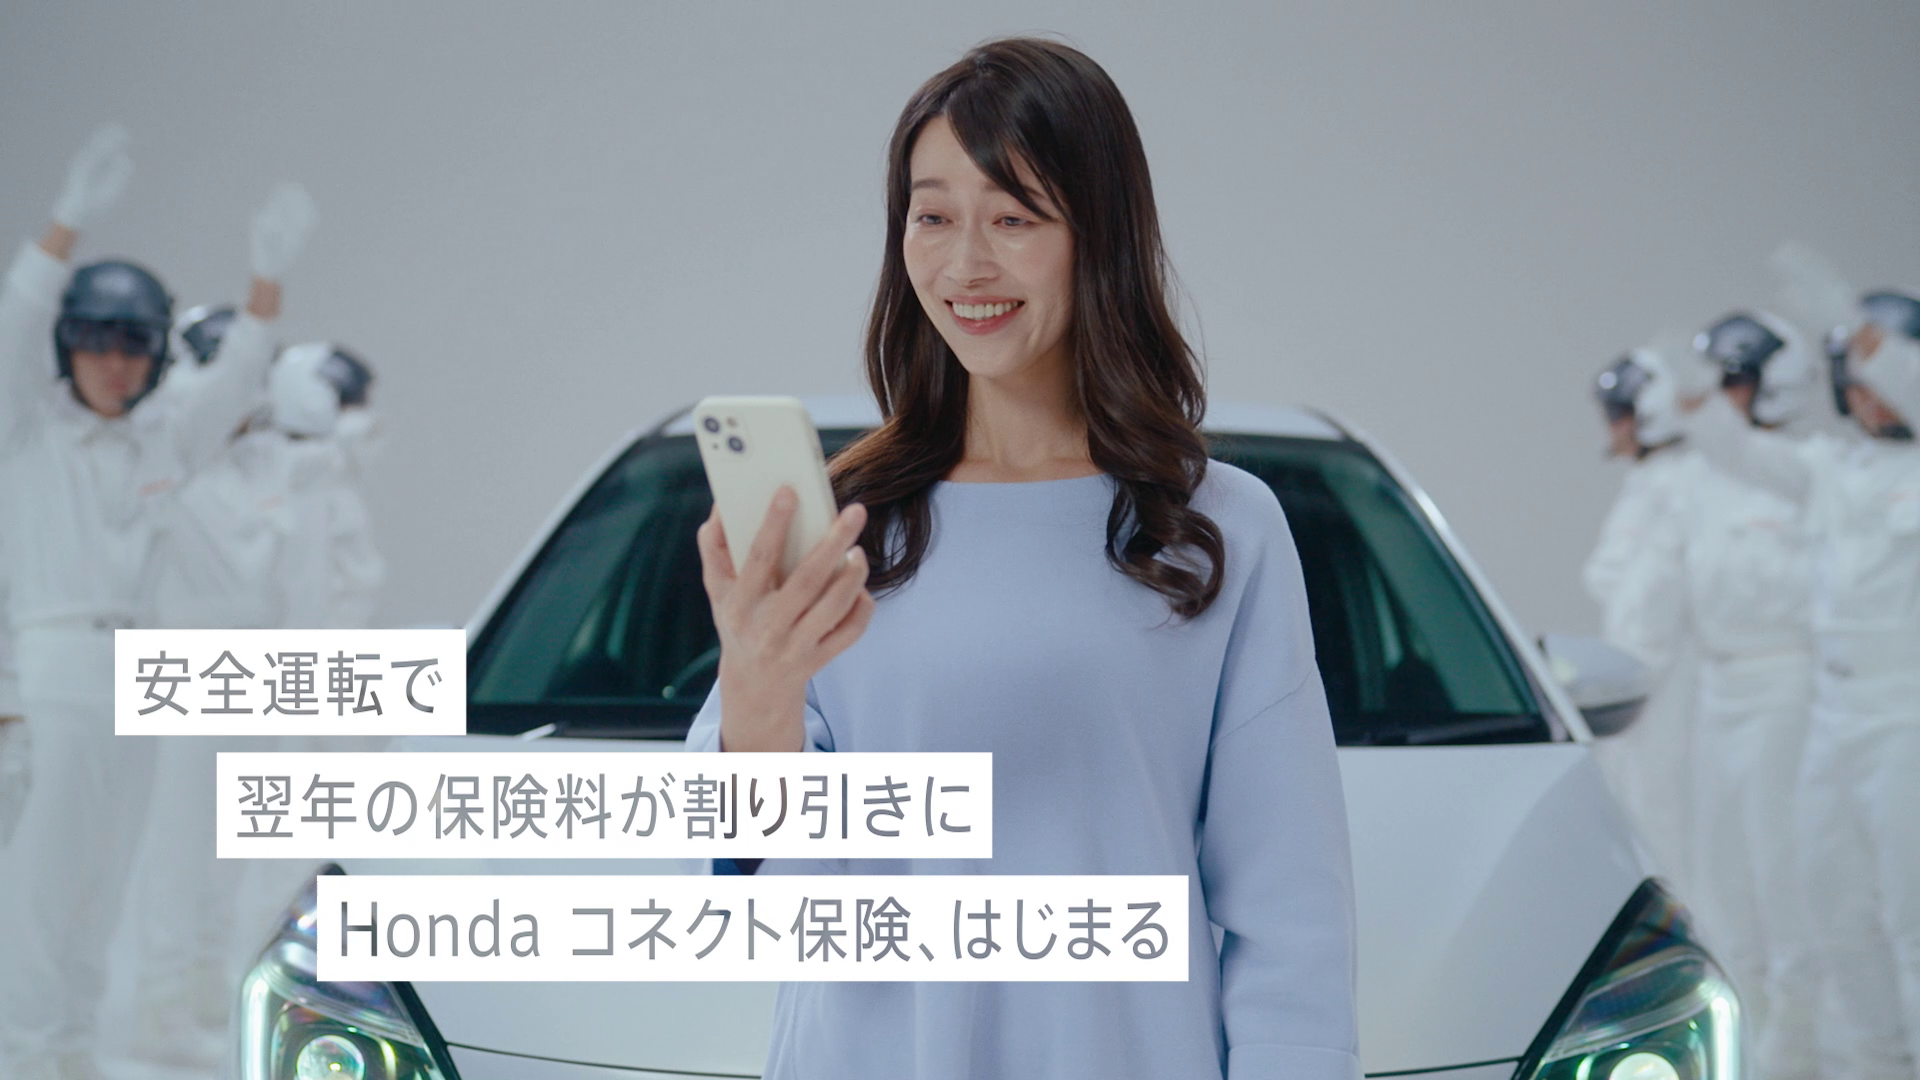 Honda CONNECT「Honda コネクト保険、はじまる。」篇 CM